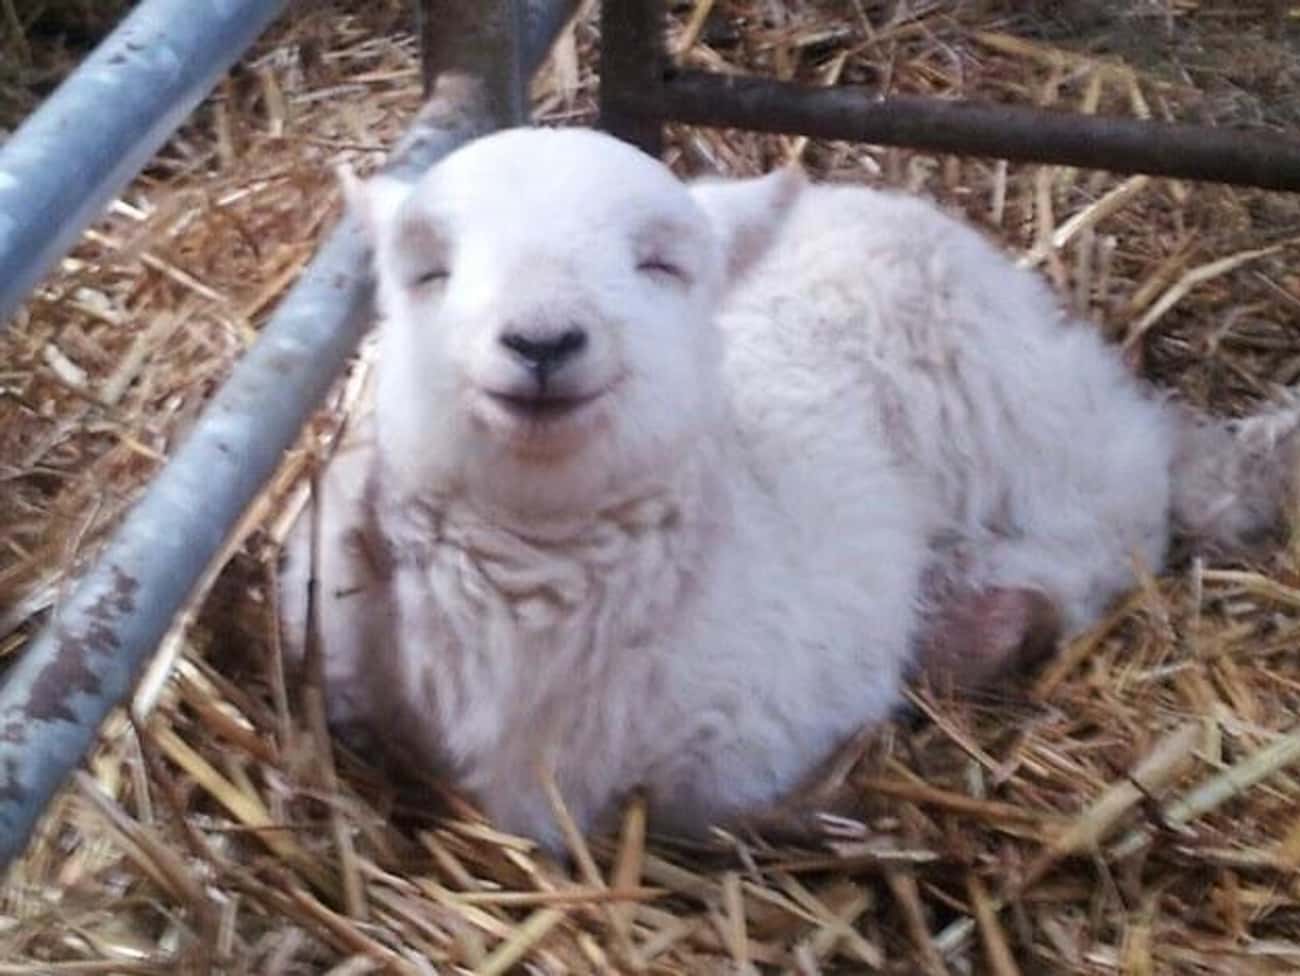 This Happy Napping Lamb